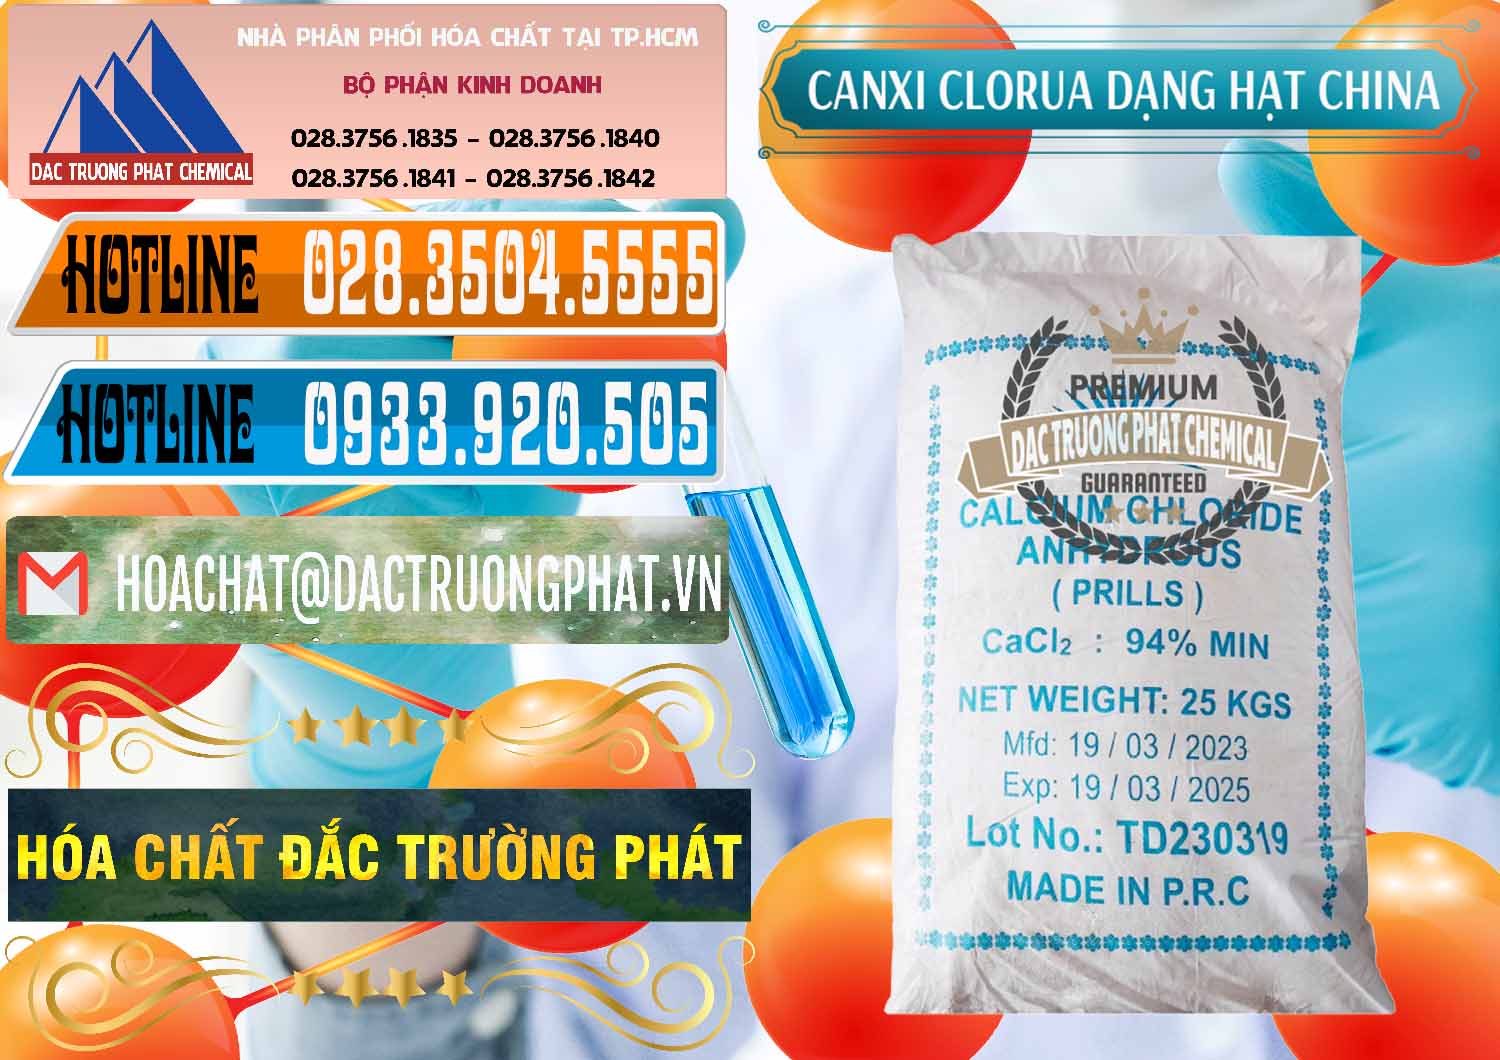 Cung ứng và bán CaCl2 – Canxi Clorua 94% Dạng Hạt Trung Quốc China - 0373 - Nhà phân phối & cung ứng hóa chất tại TP.HCM - stmp.net